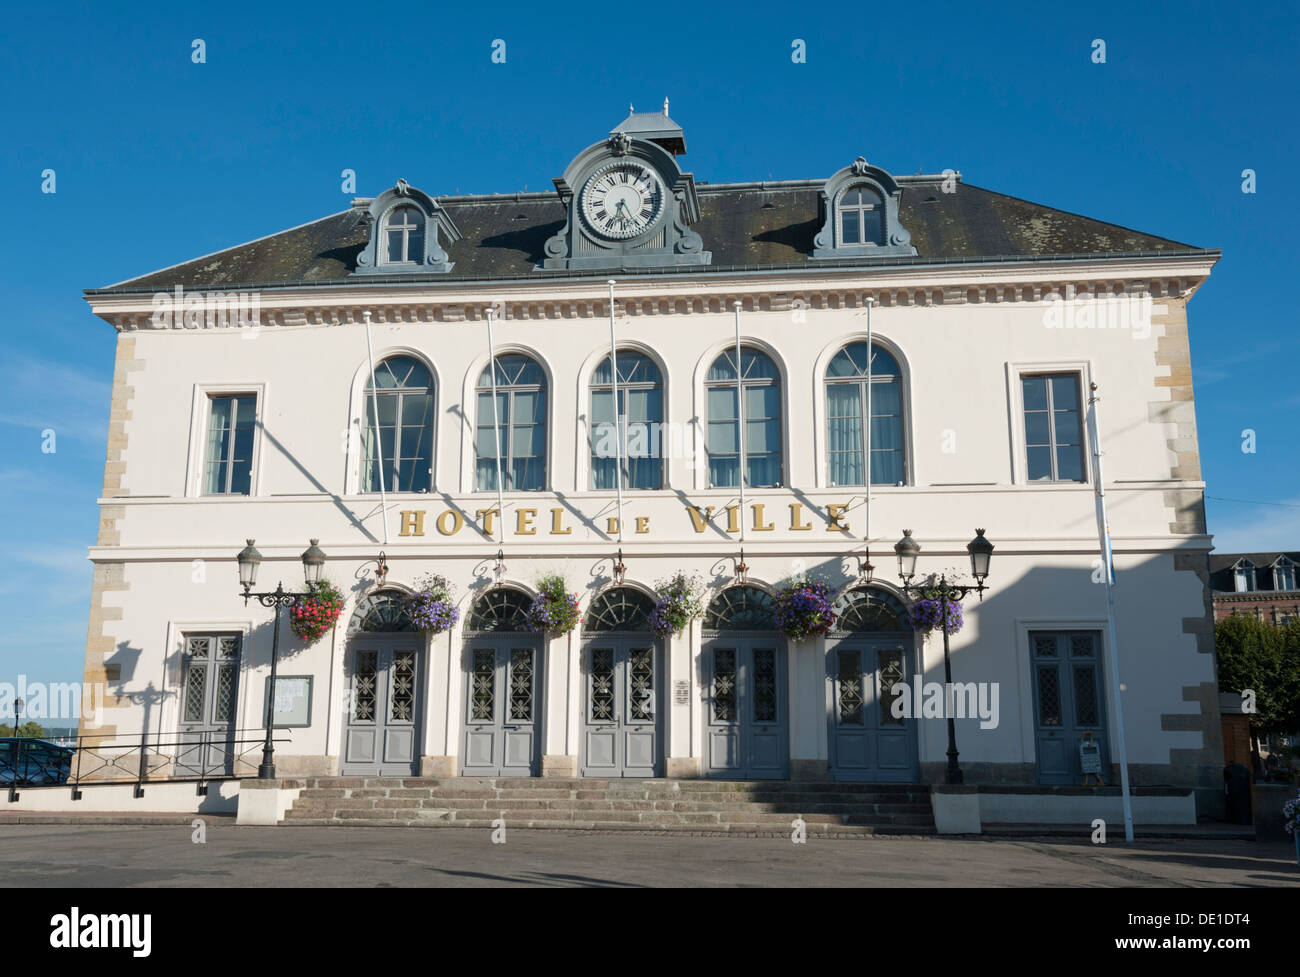 The Hotel de Ville Honfleur Normandy France Stock Photo